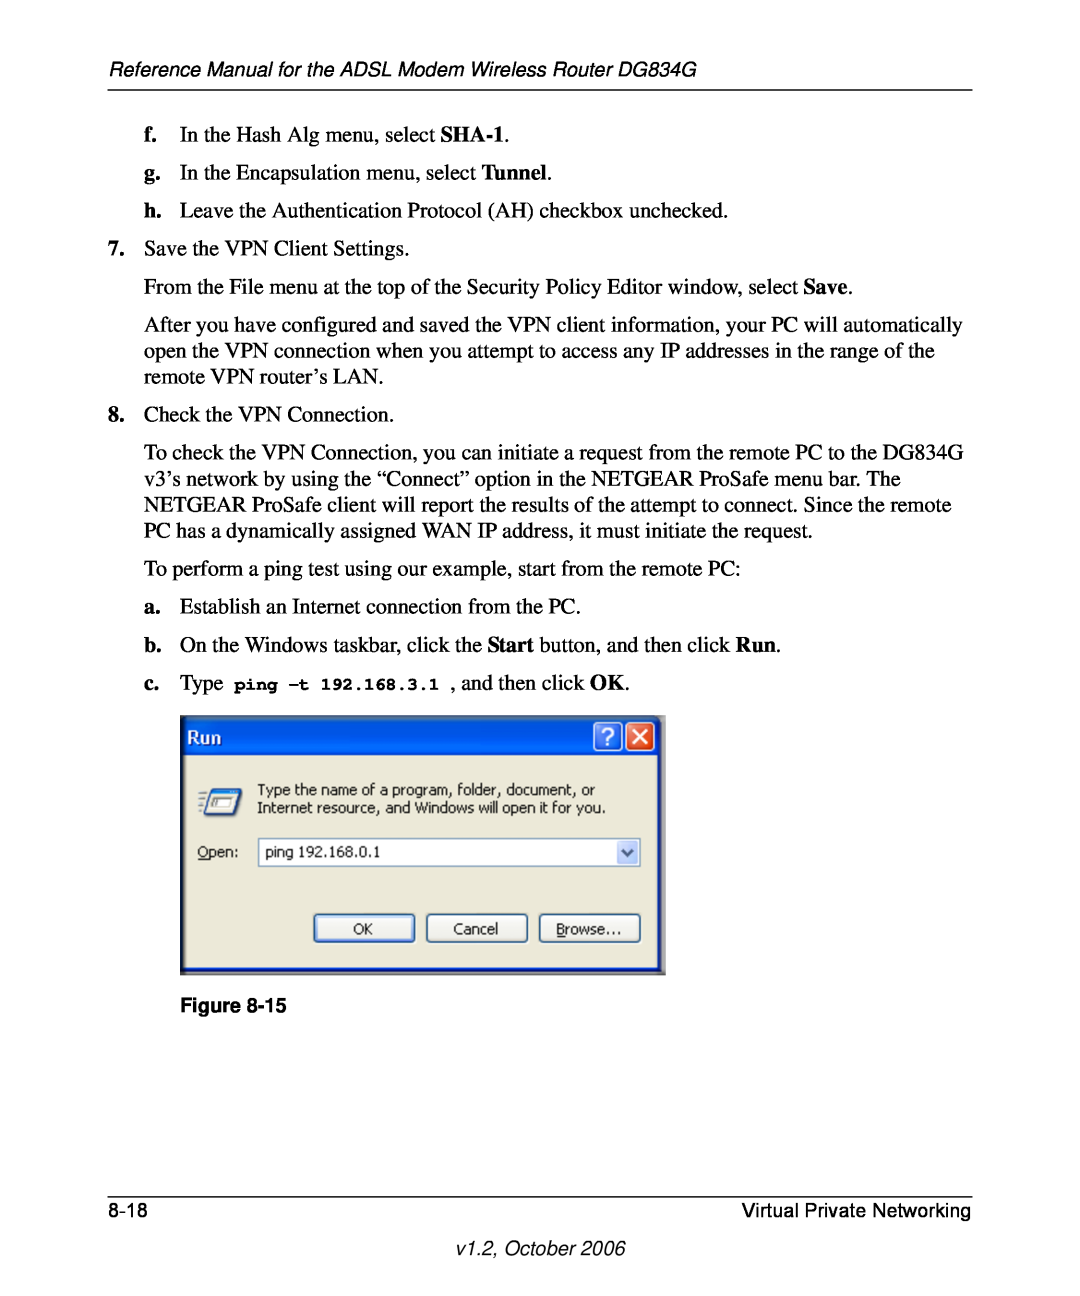 NETGEAR DG834G manual f. In the Hash Alg menu, select SHA-1 